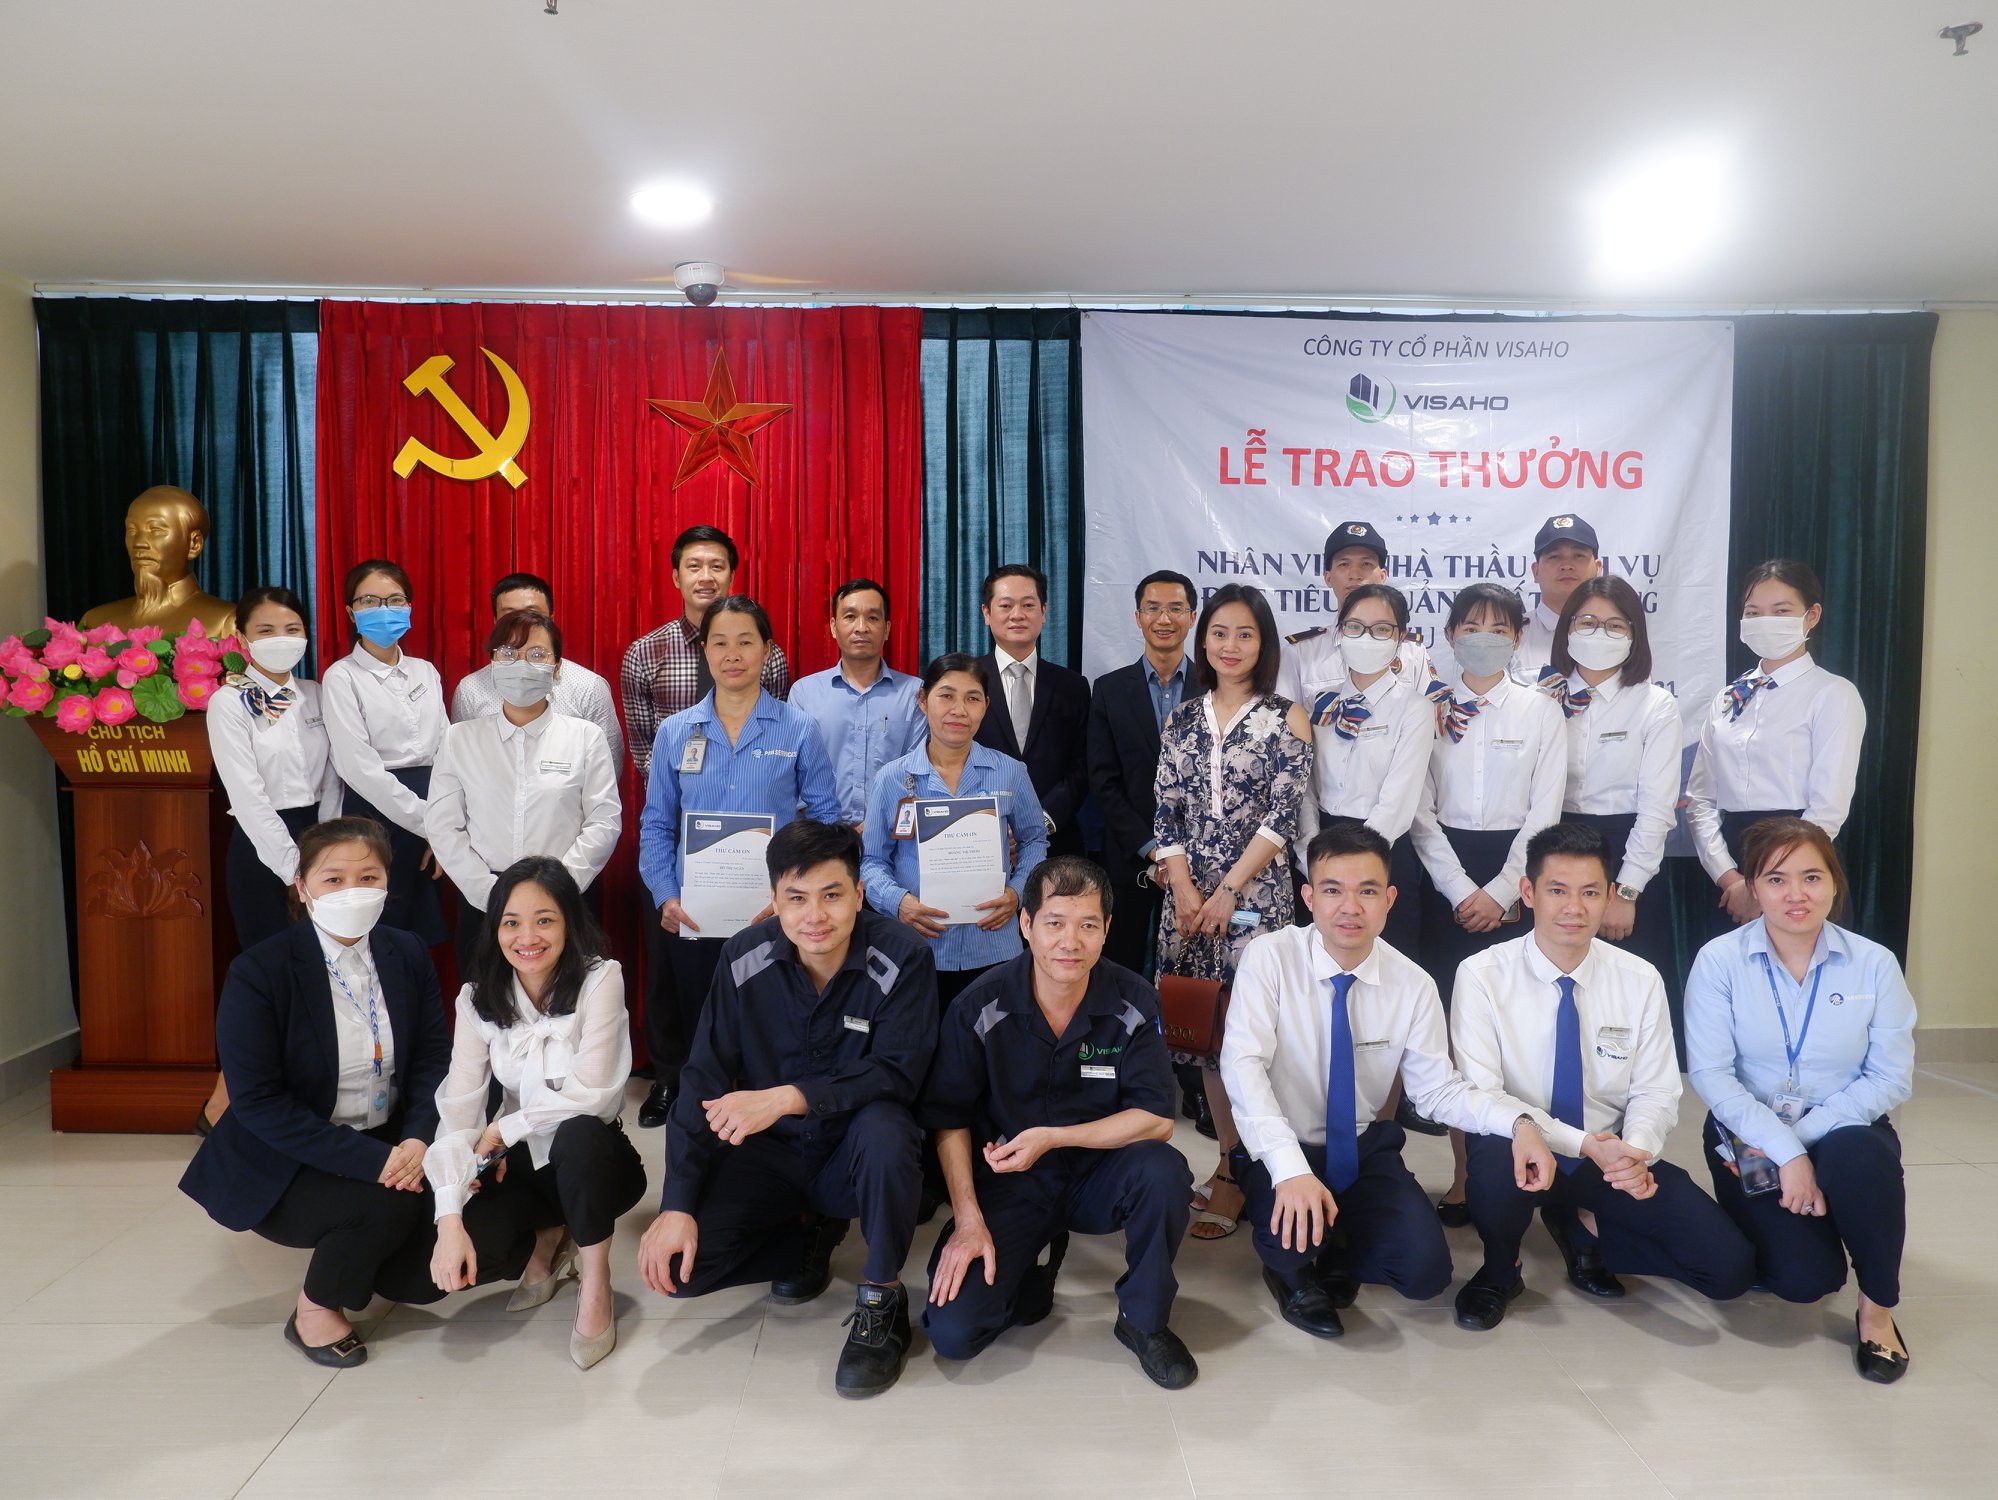 PGĐ Phạm Tất Thành trao thưởng nhân viên nhà thầu đạt tiêu chuẩn chất lượng dịch vụ tại Thang Long No.1